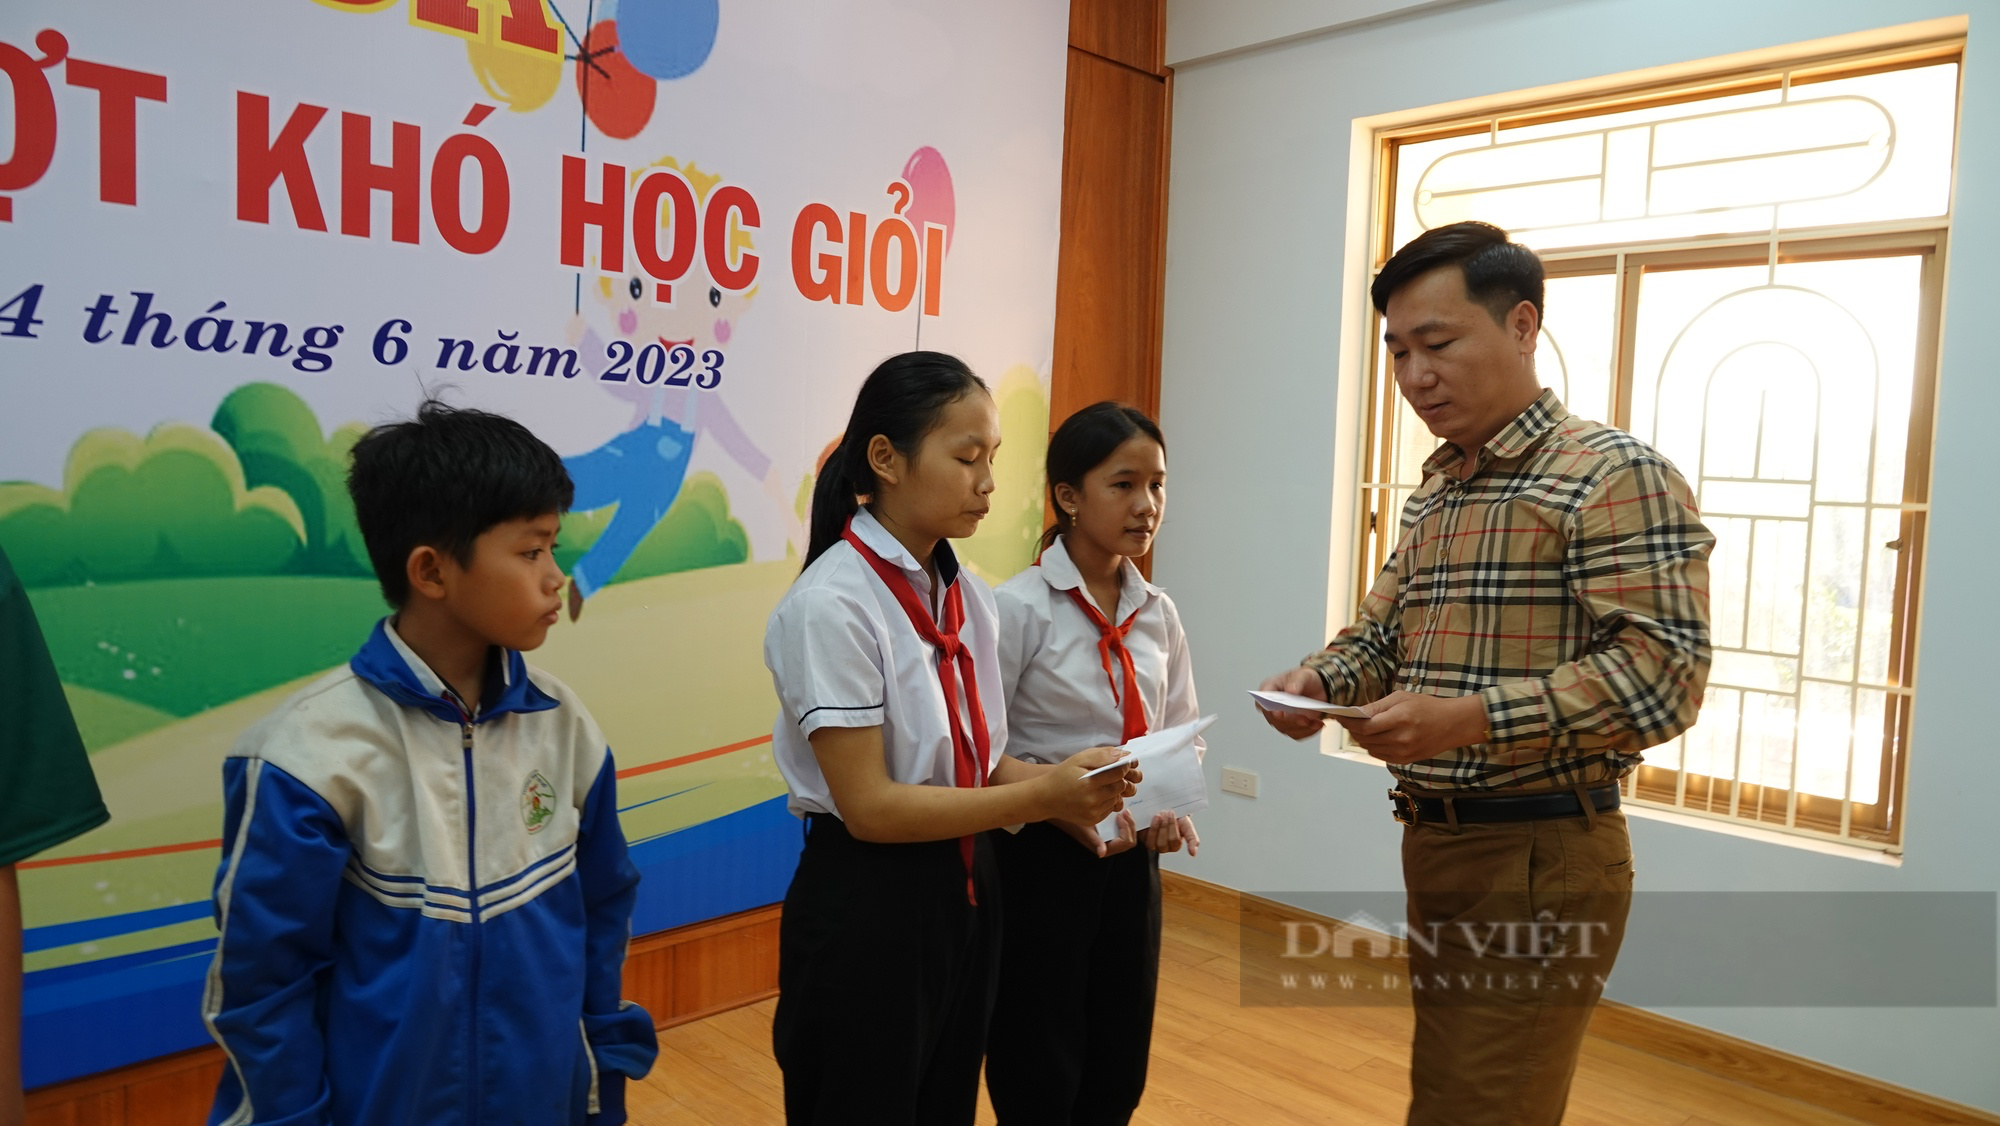 Học sinh vượt khó học giỏi tại Bình Định nhận quà từ nhà báo - Ảnh 1.